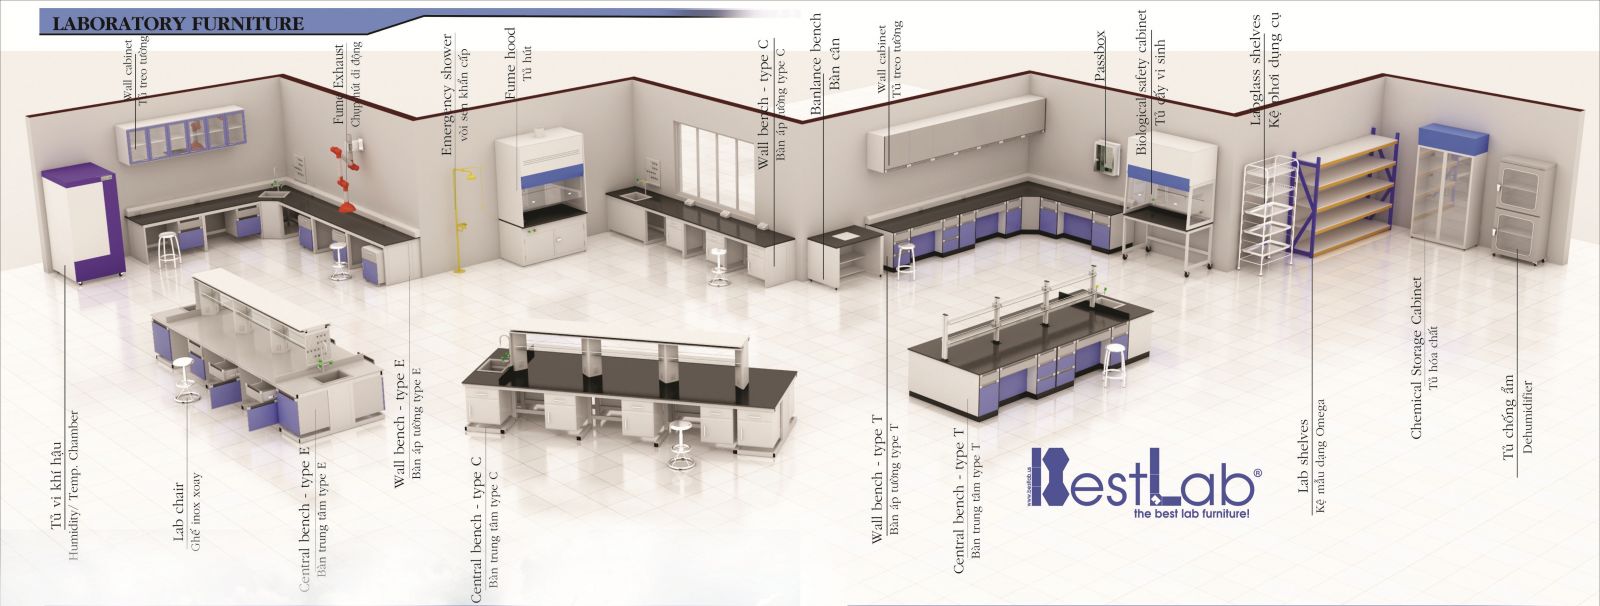 Chuyên sản xuất - thiết kế - tư vấn - lắp đặt nội thất cho phòng thí nghiệm, kiểm nghiệm (phòng lab)